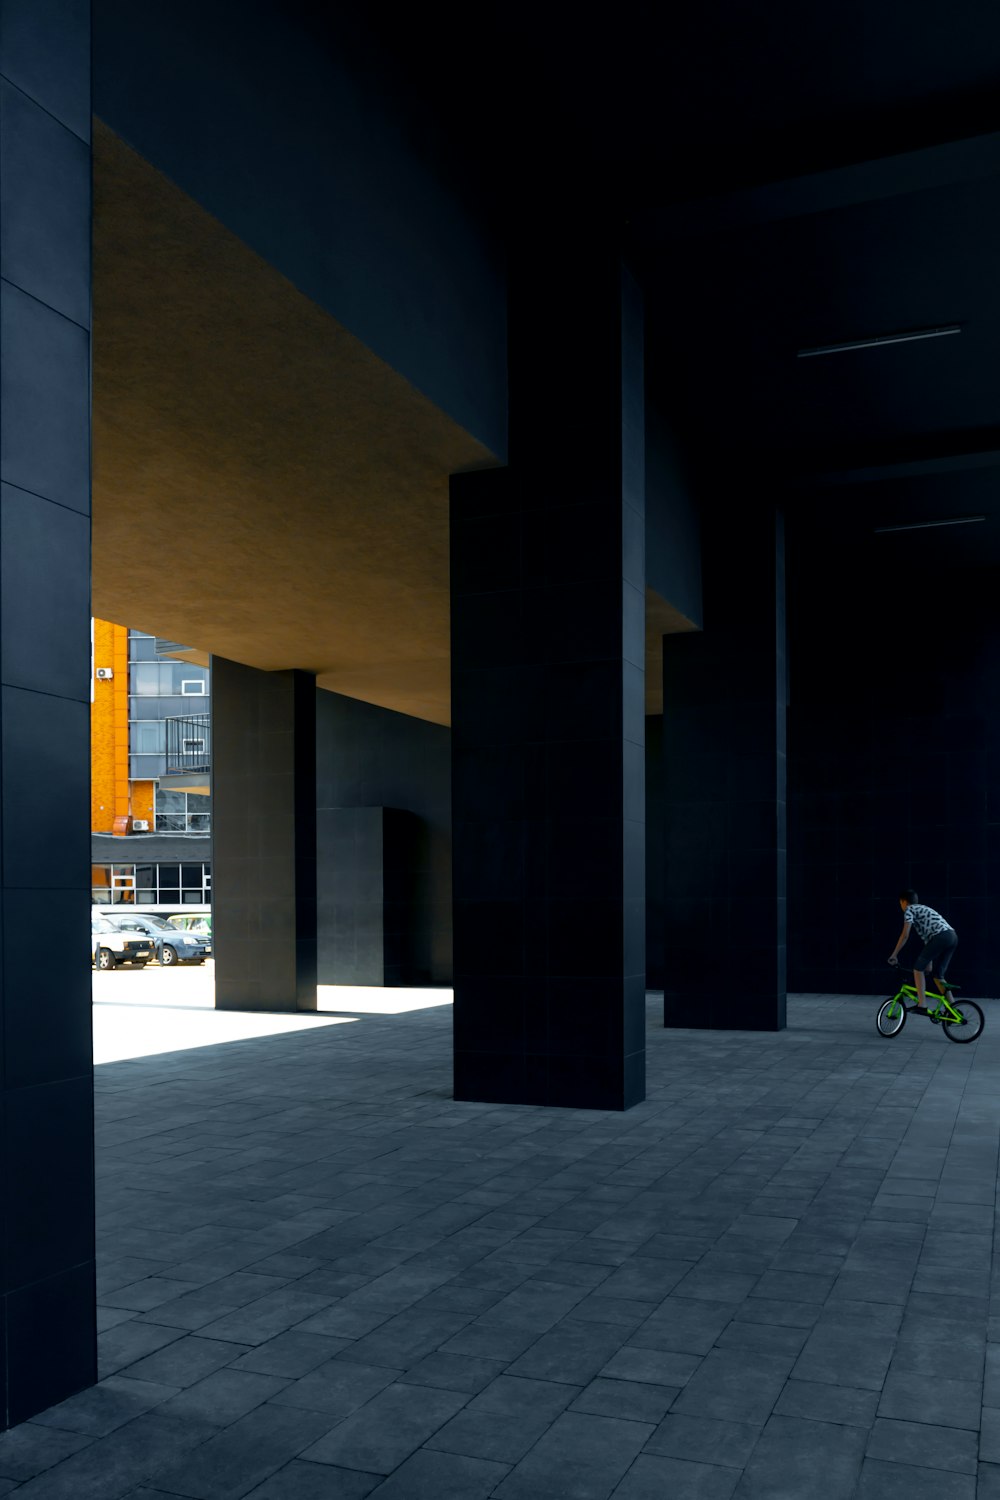 Bicicleta blanca y negra estacionada junto a un edificio de concreto marrón durante la noche